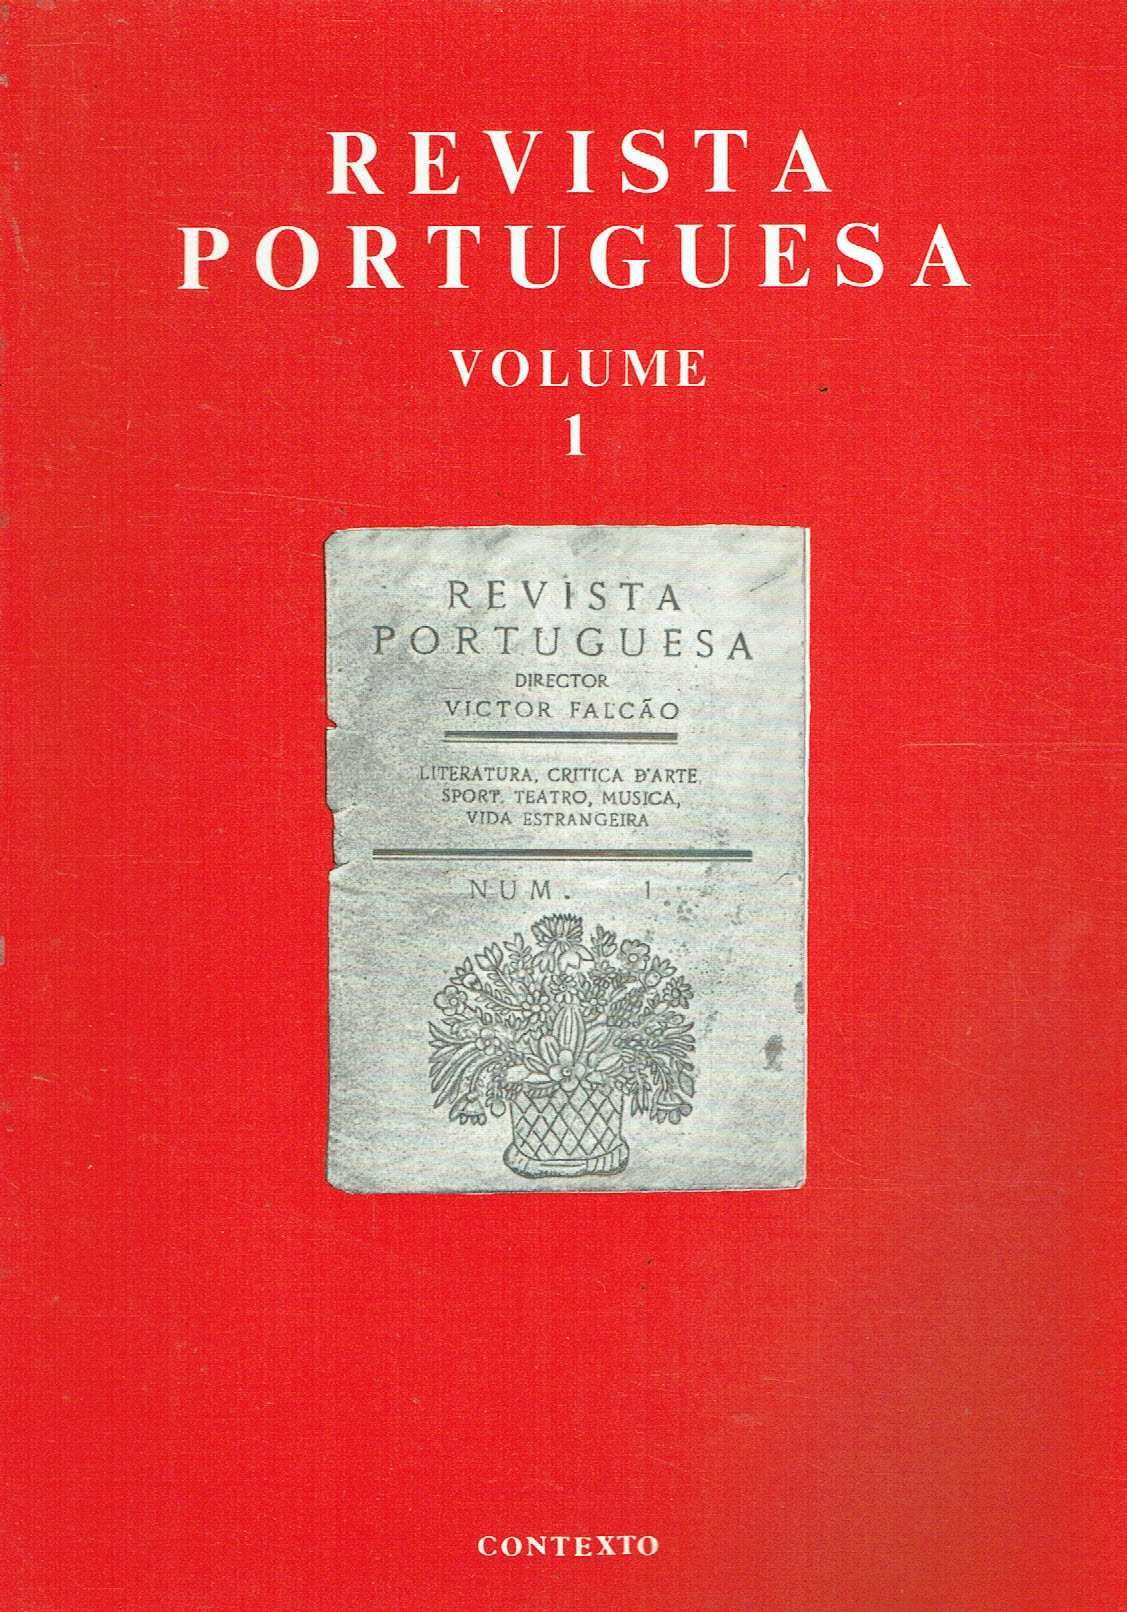 14277

REVISTA PORTUGUESA. 
Literatura, critica d'arte,